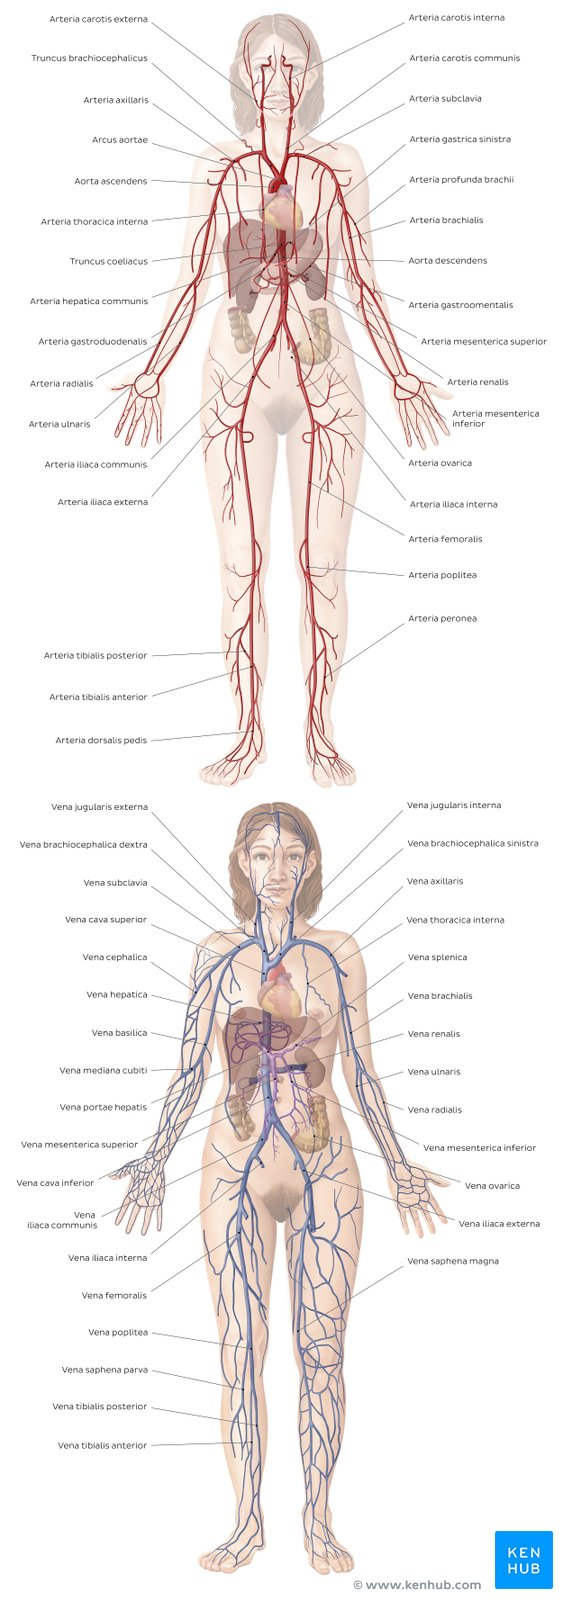 Beschriftetes Übersichtsbild der wichtigsten Arterien und Venen